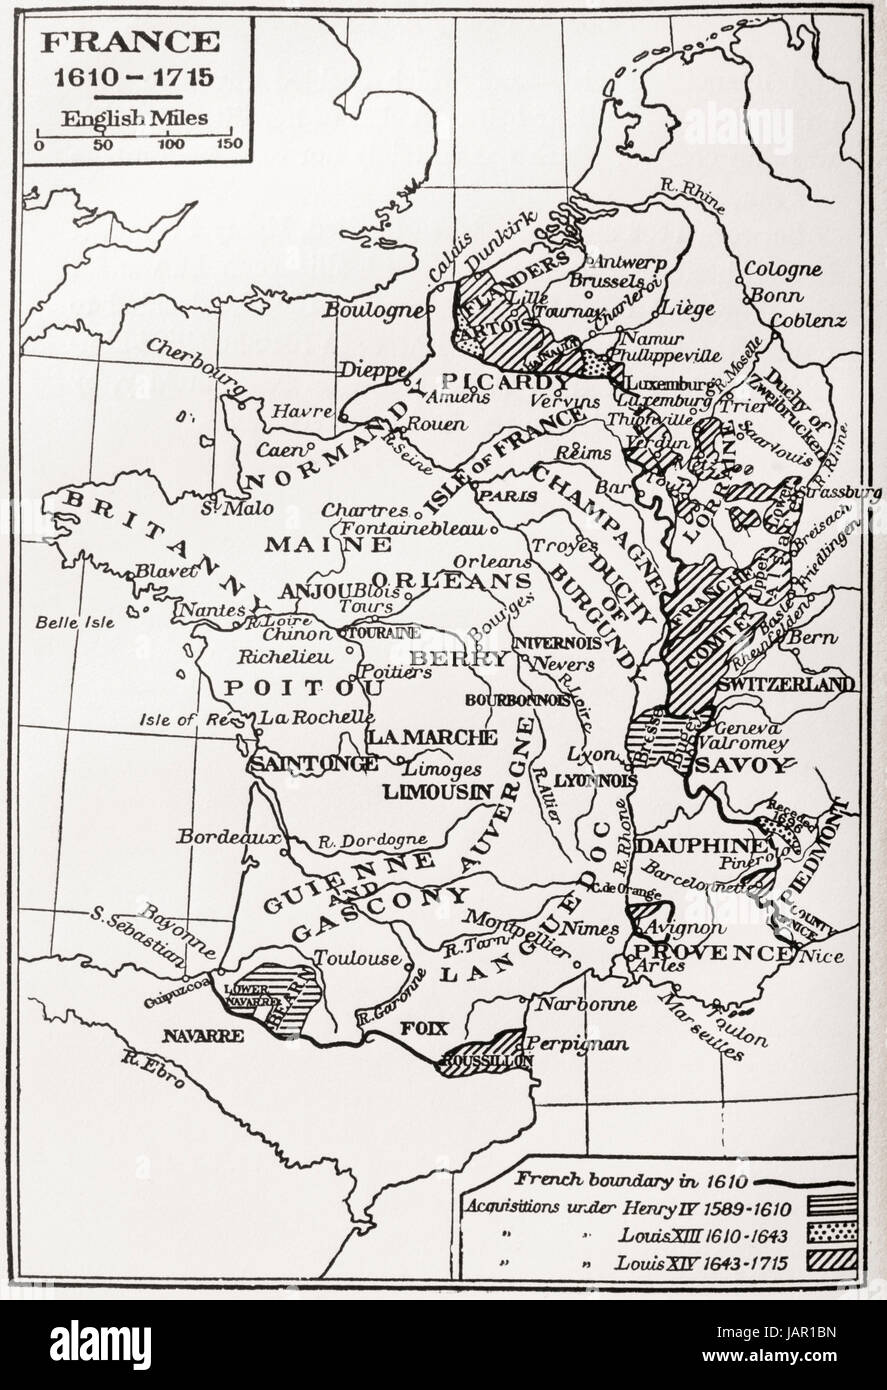 Karte von Frankreich, 1610-1715. Aus Frankreich mittelalterlichen und modernen A History, veröffentlicht 1918. Stockfoto